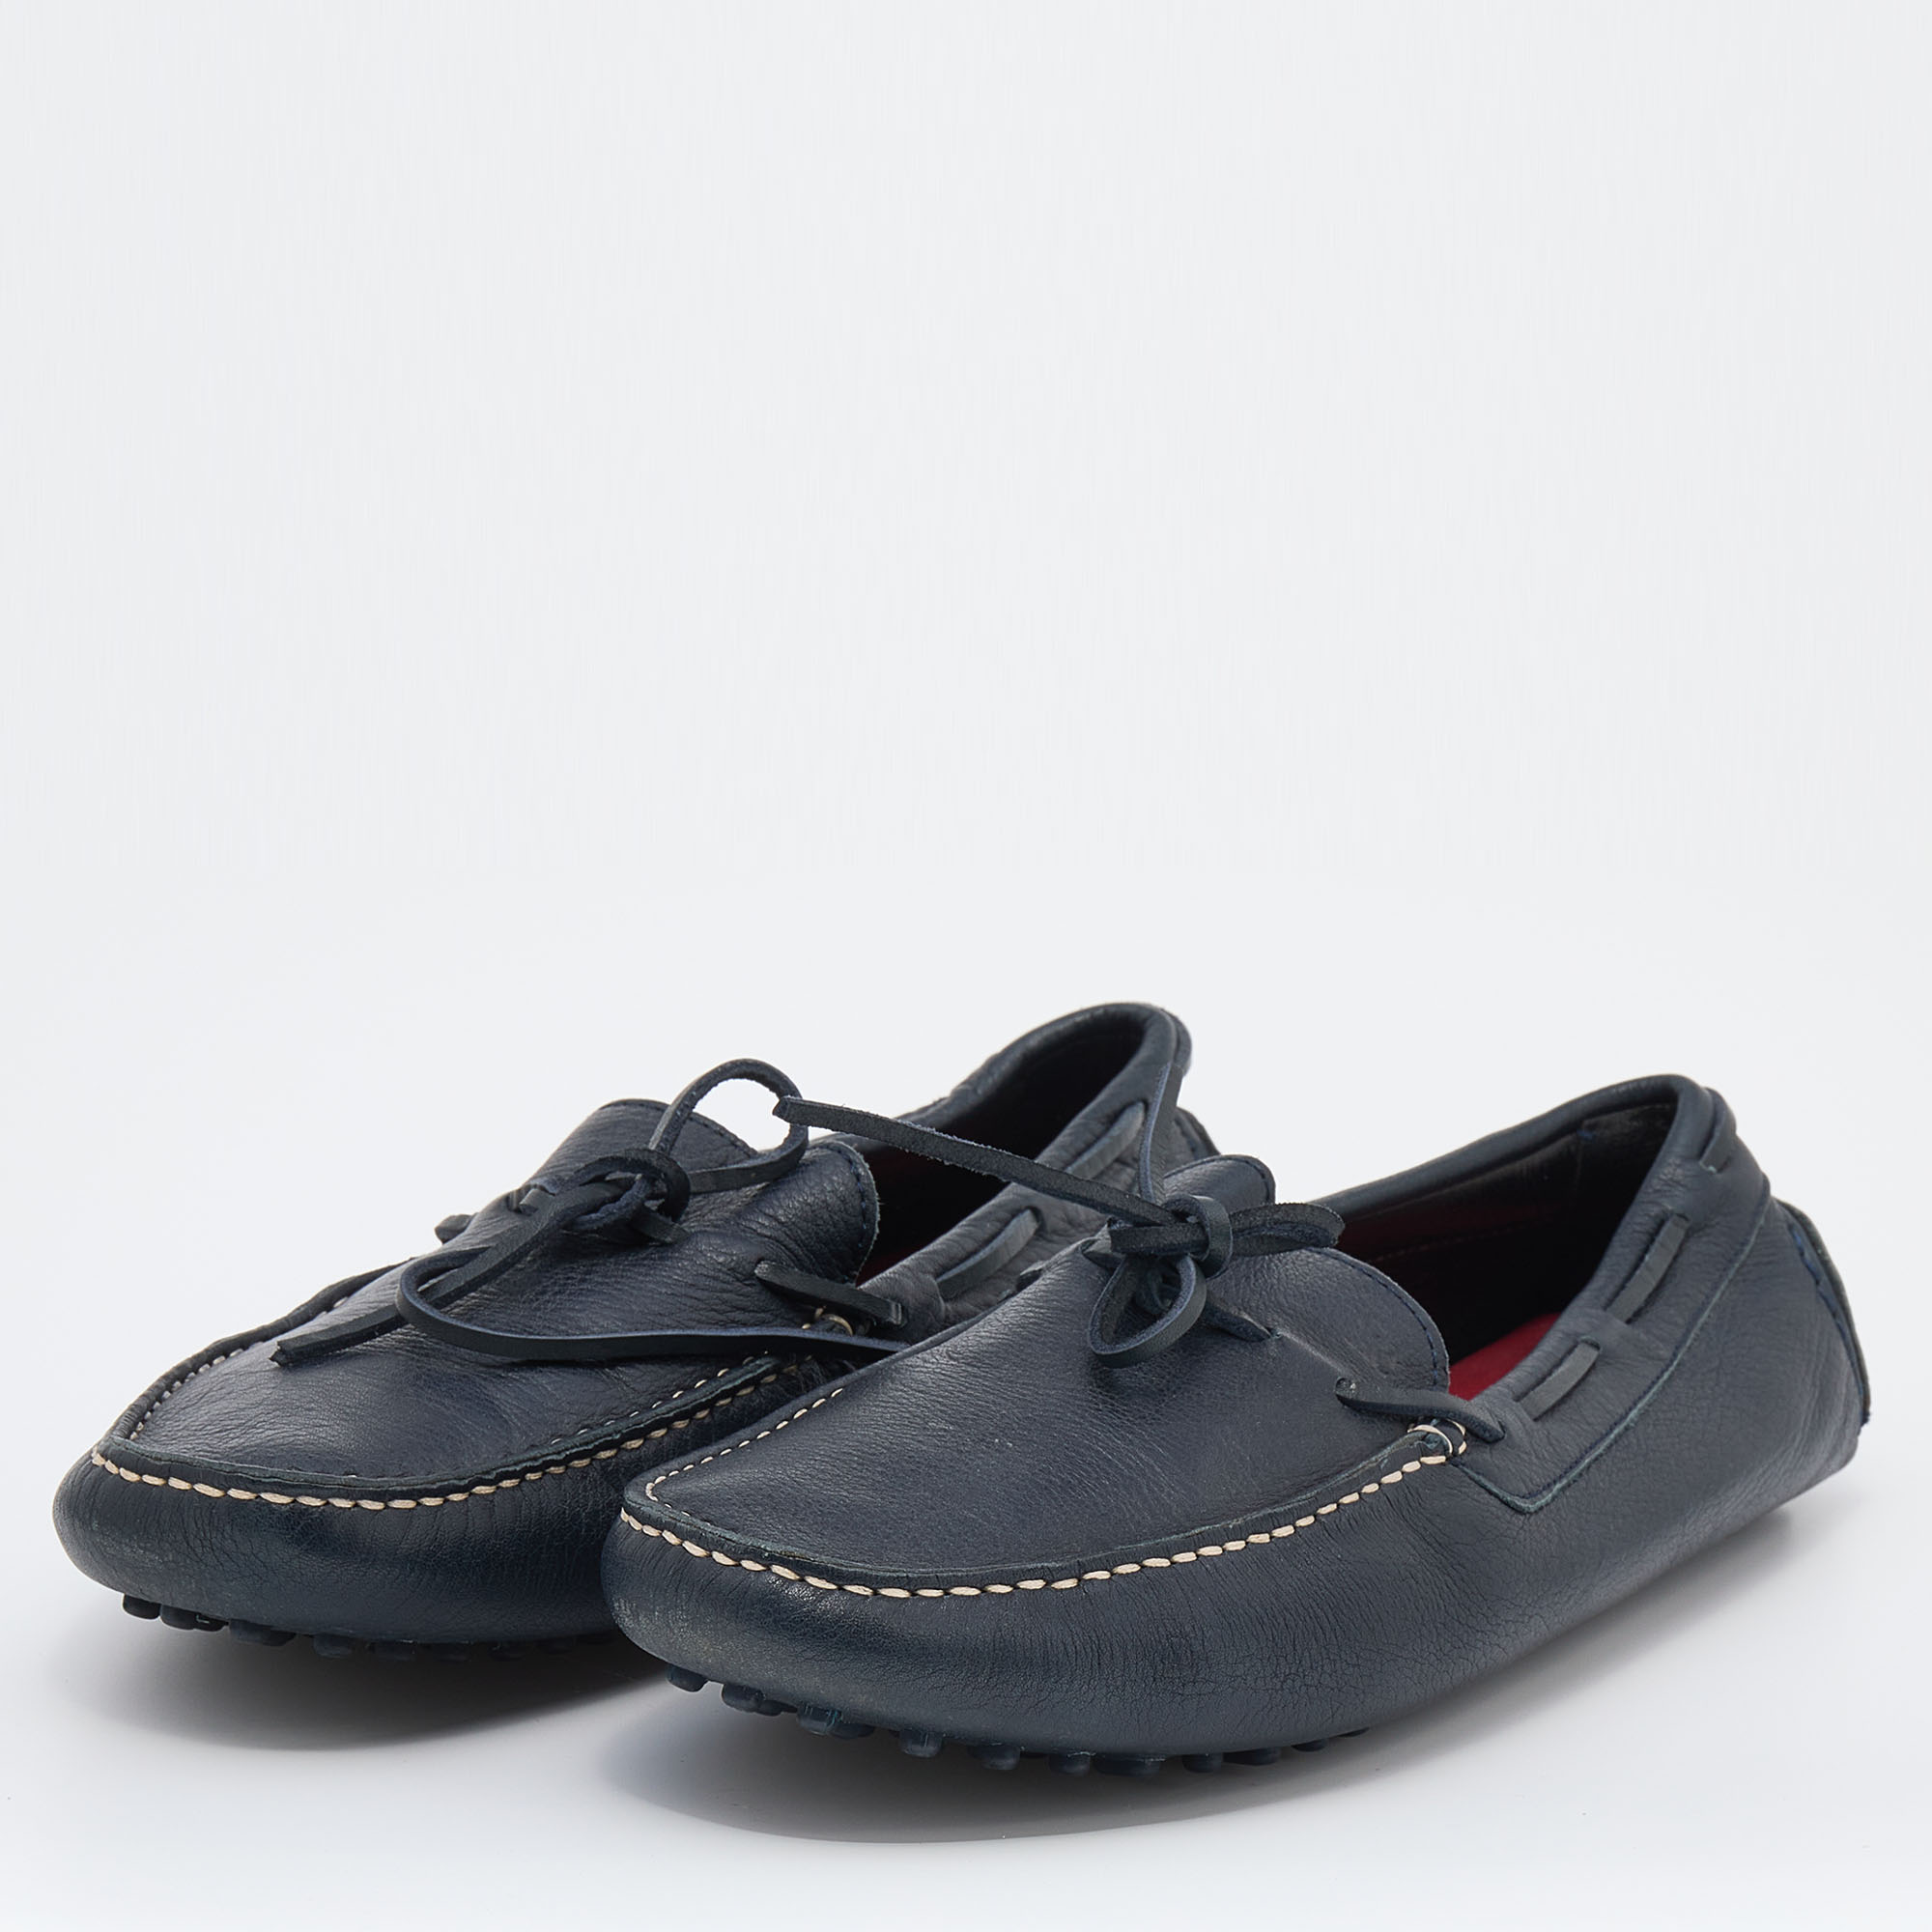 

CH Carolina Herrera Navy Blue Leather Slip On Loafers Size